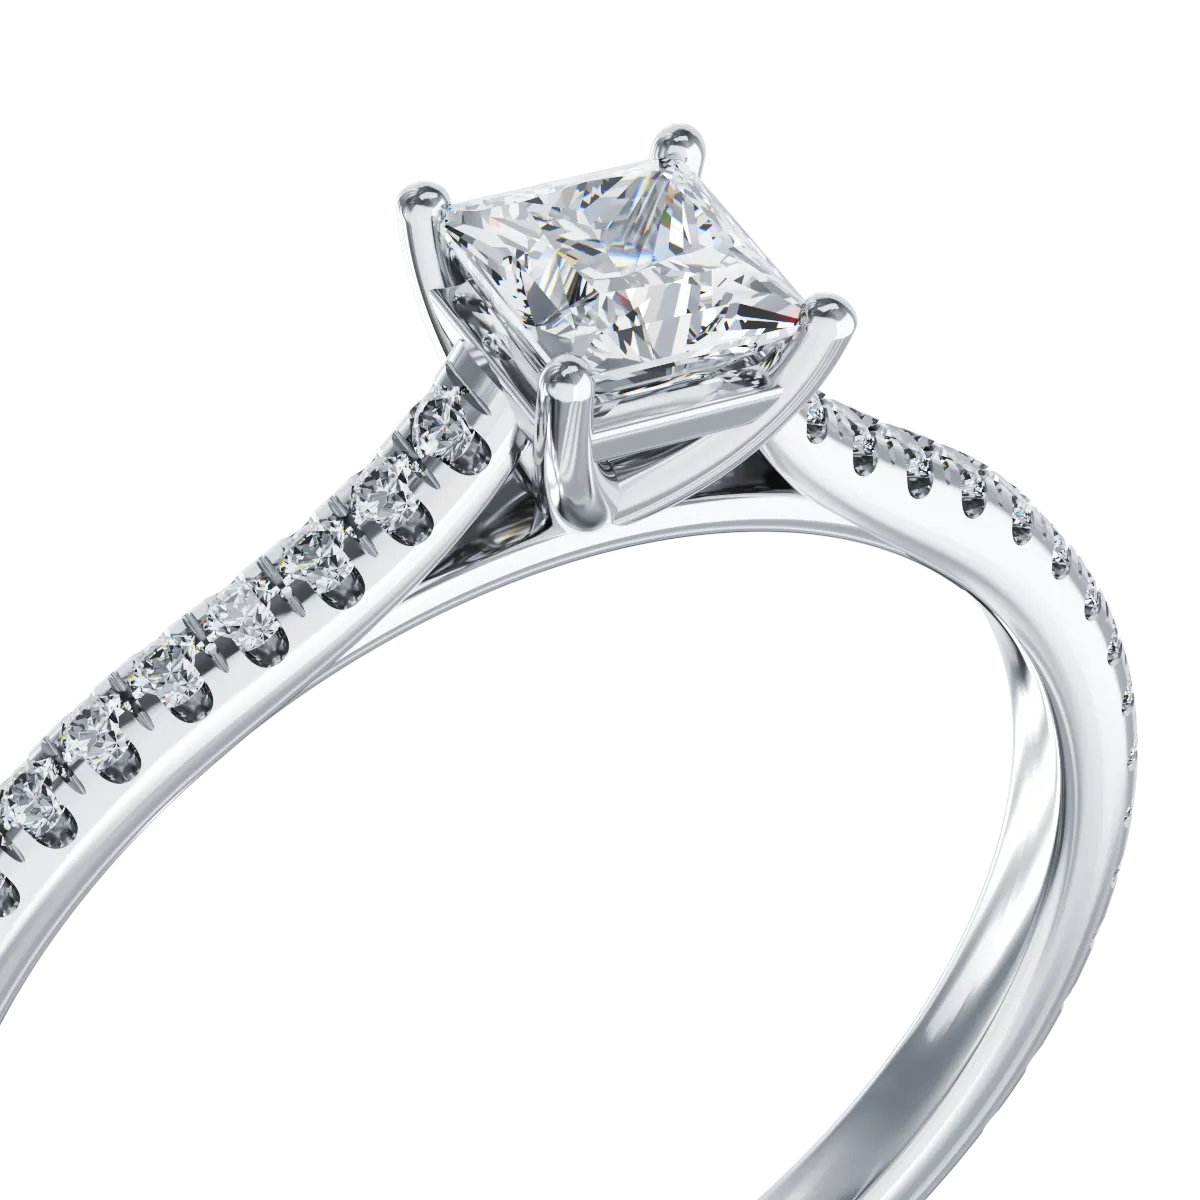 Platynowy pierścionek zaręczynowy z diamentem o masie 0.325ct i diamentami o masie 0.165ct